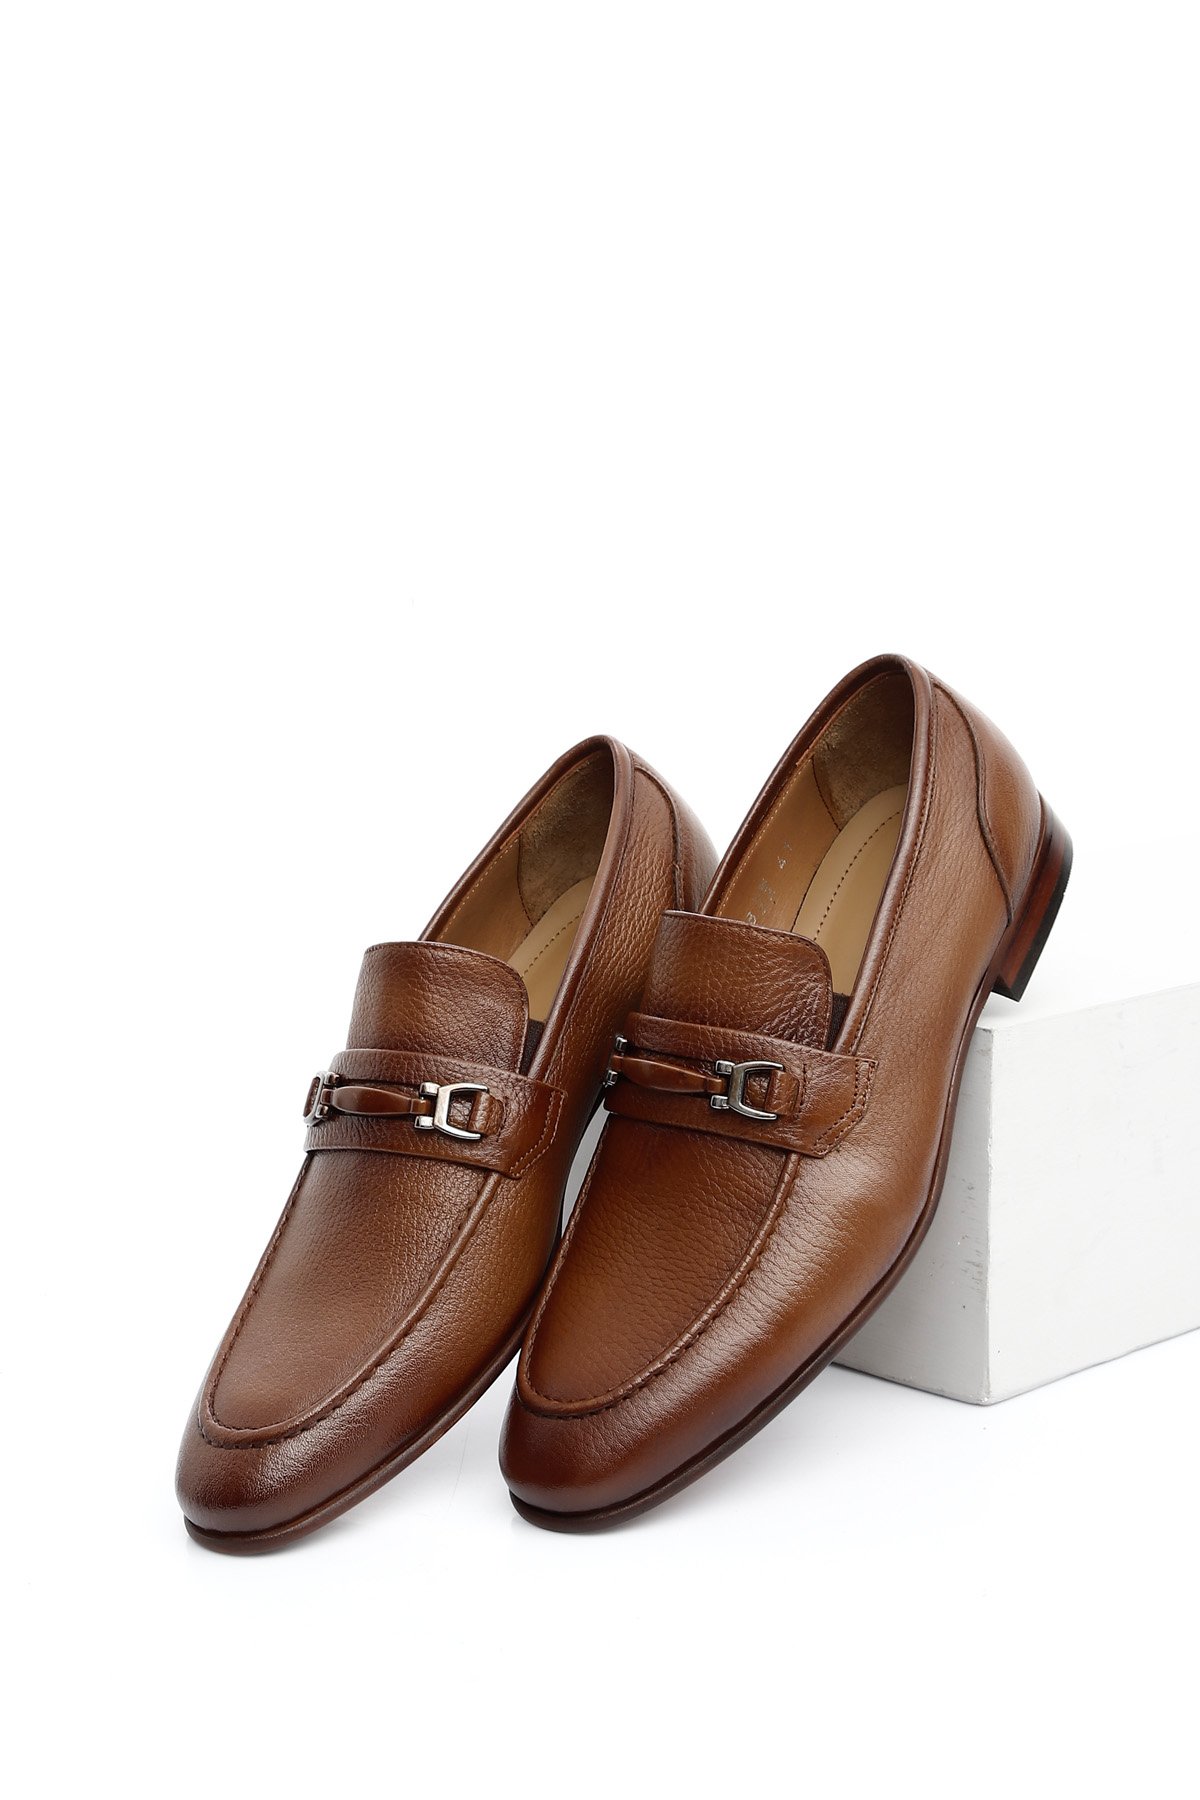 Gön Platinum Hakiki Deri Tokalı Klasik Erkek Ayakkabı 34198 | Gön Deri